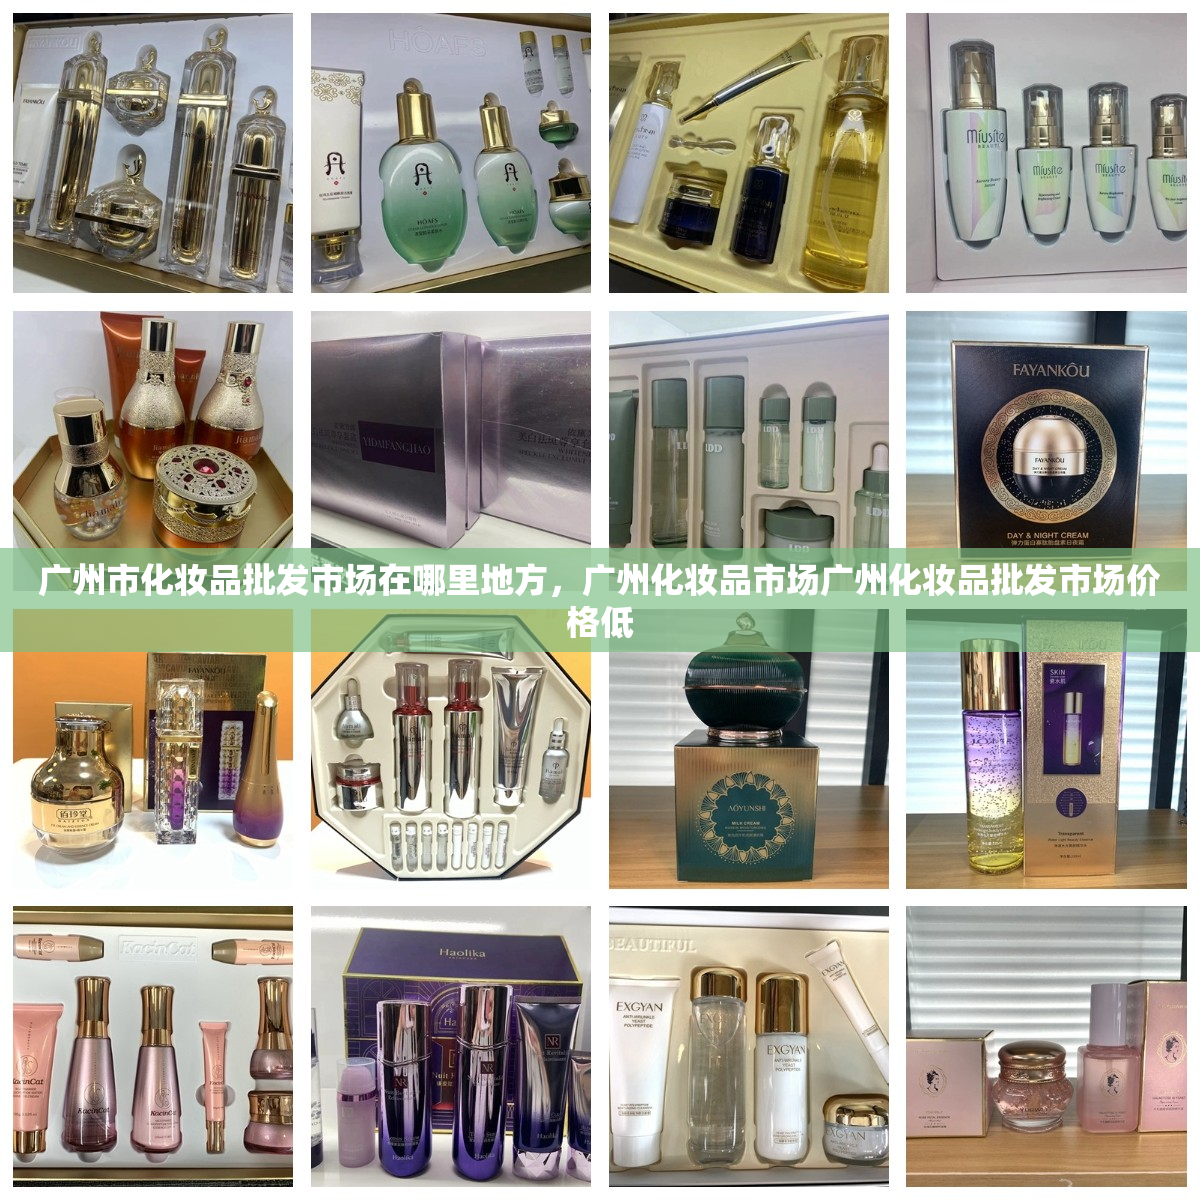 广州市化妆品批发市场在哪里地方，广州化妆品市场广州化妆品批发市场价格低